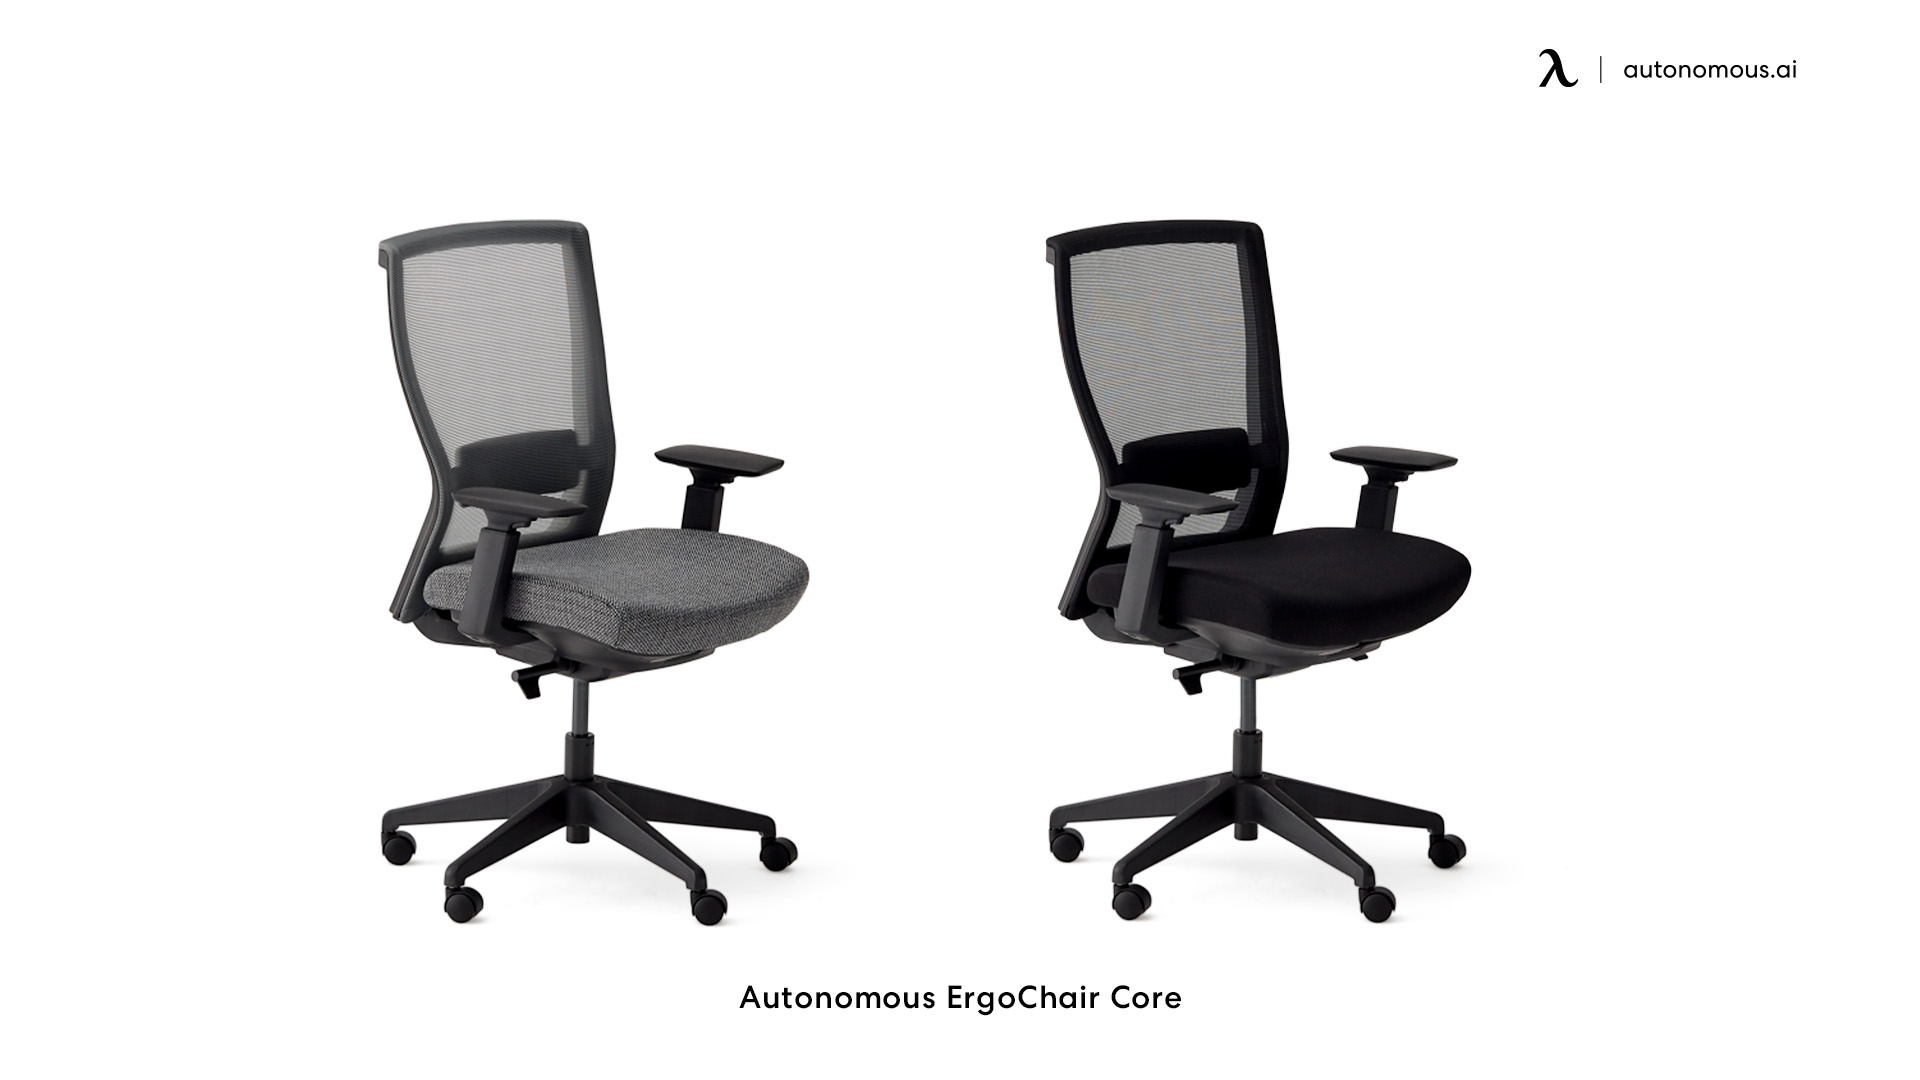 ErgoChair Core black office chair